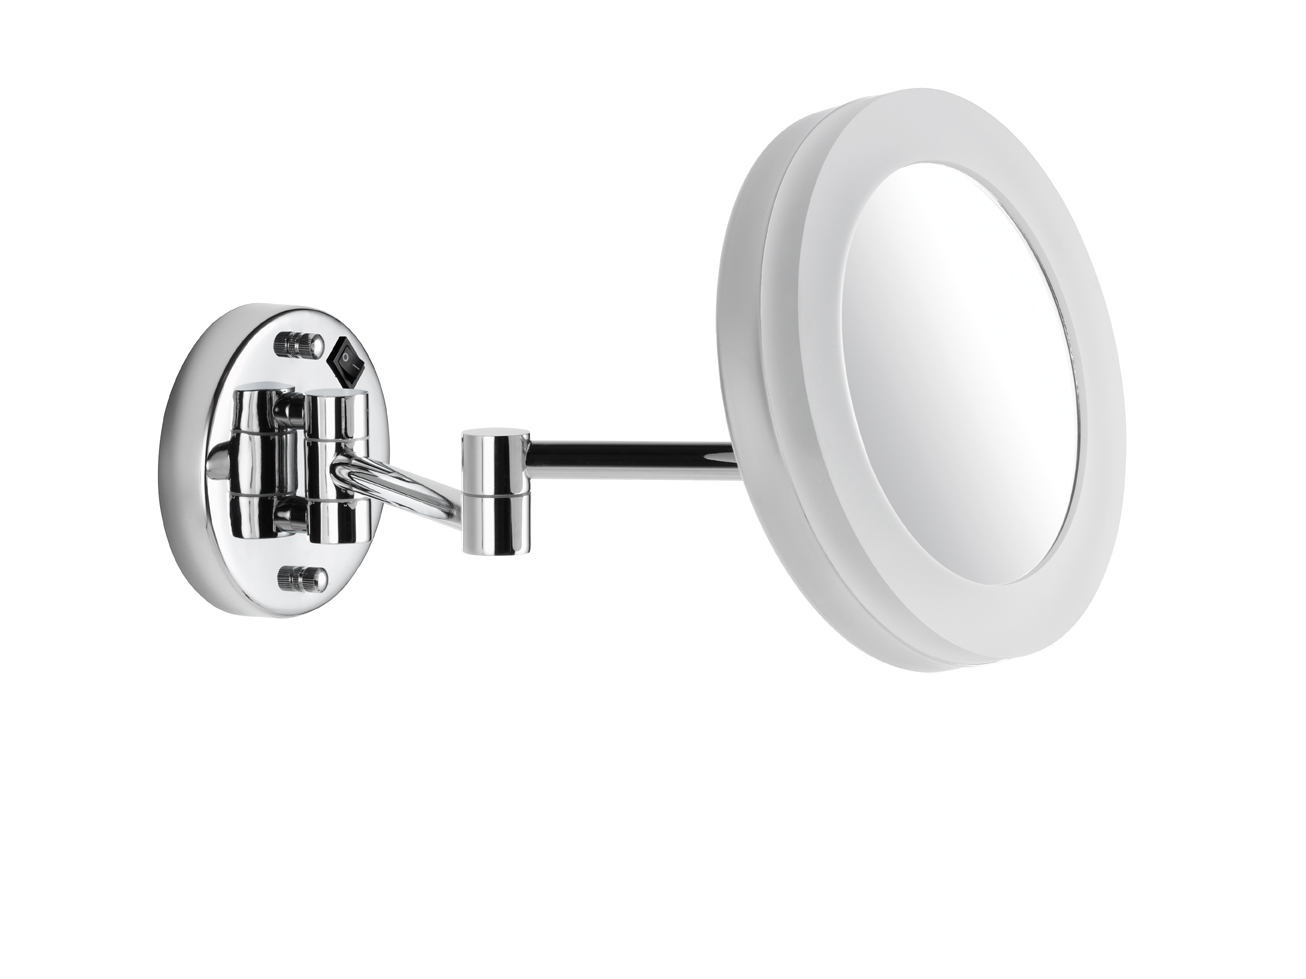 AVENARIUS Kosmetikspiegel Wand Direkt
rund, LED, 5-fach, 2-armig, Serie Kosm. 9505101010